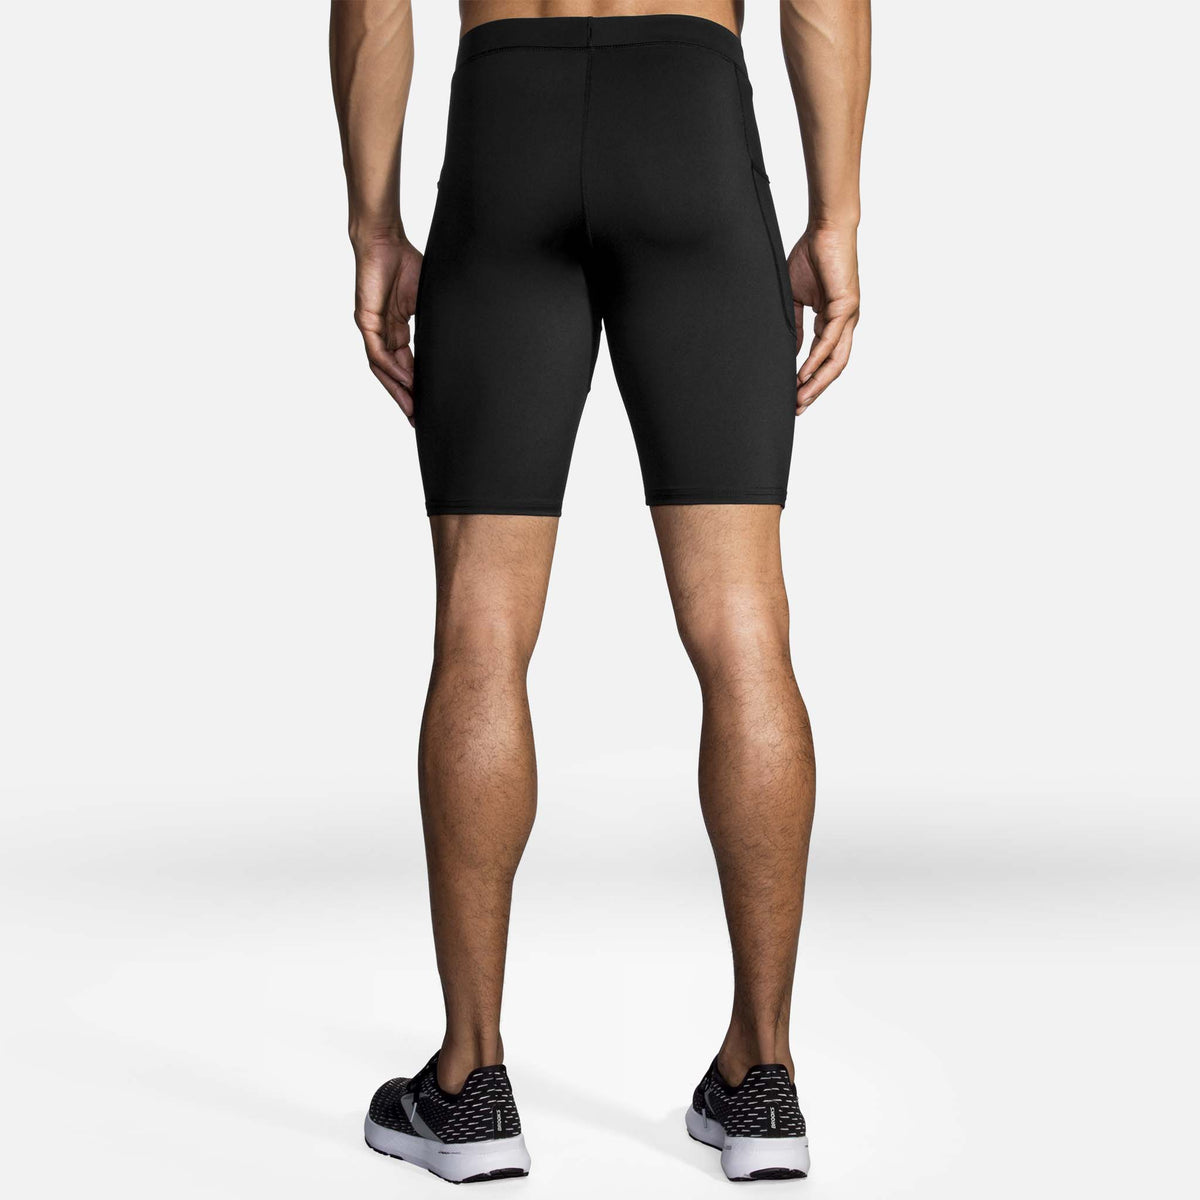 Brooks Source shorts 9 pouces type cuissards de course a pied noir homme dos